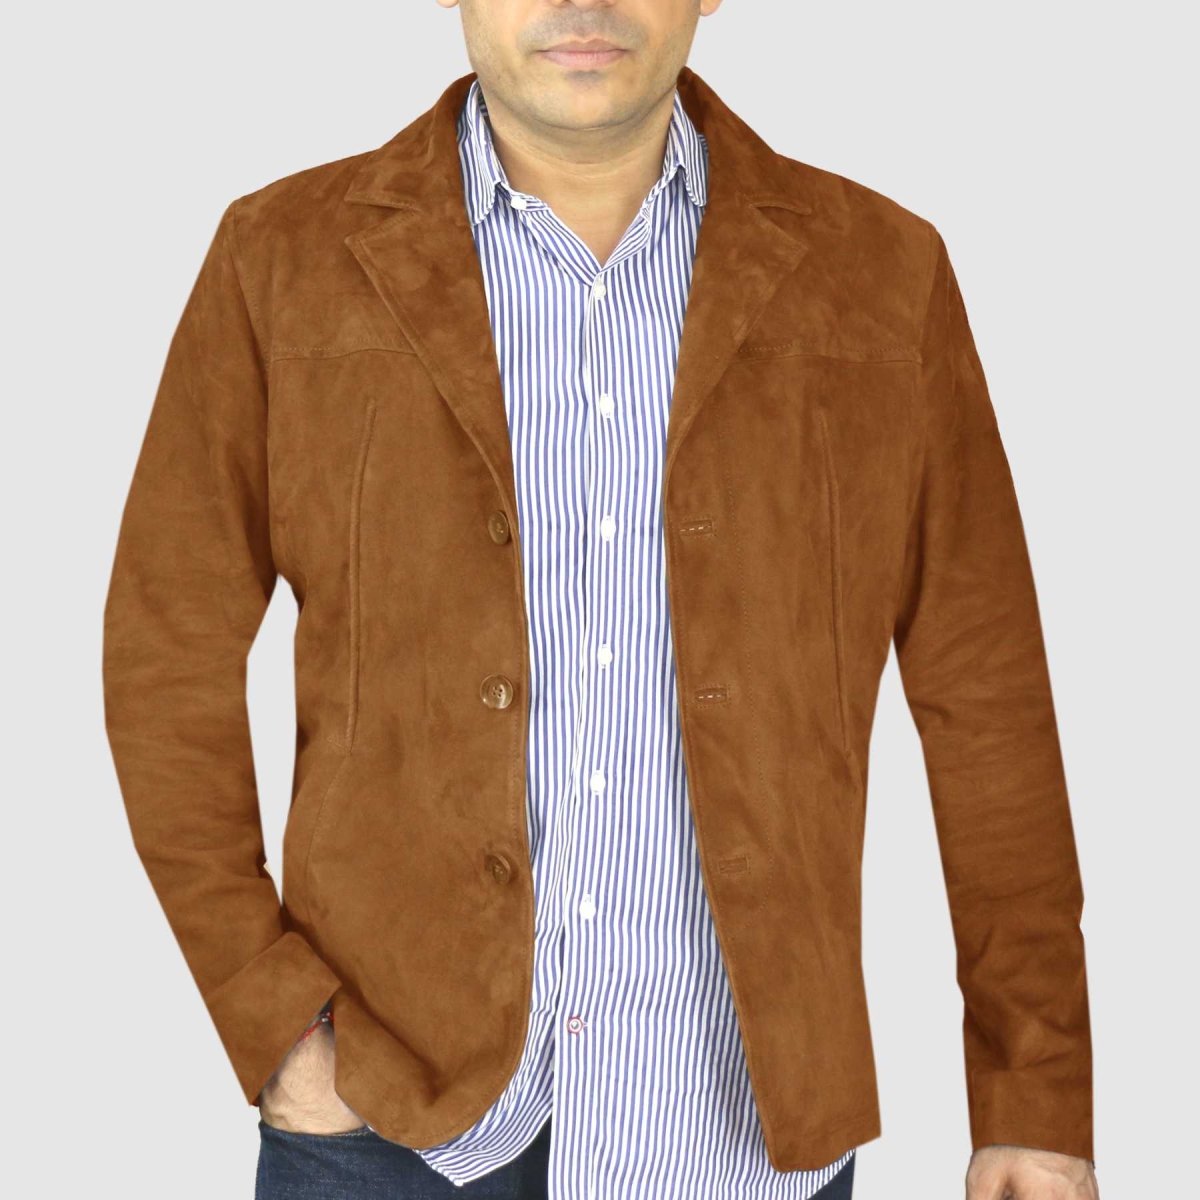 Suede Blazer Jacket M140-#Tan - Tan Suit | Leather Jackets | Men's ...